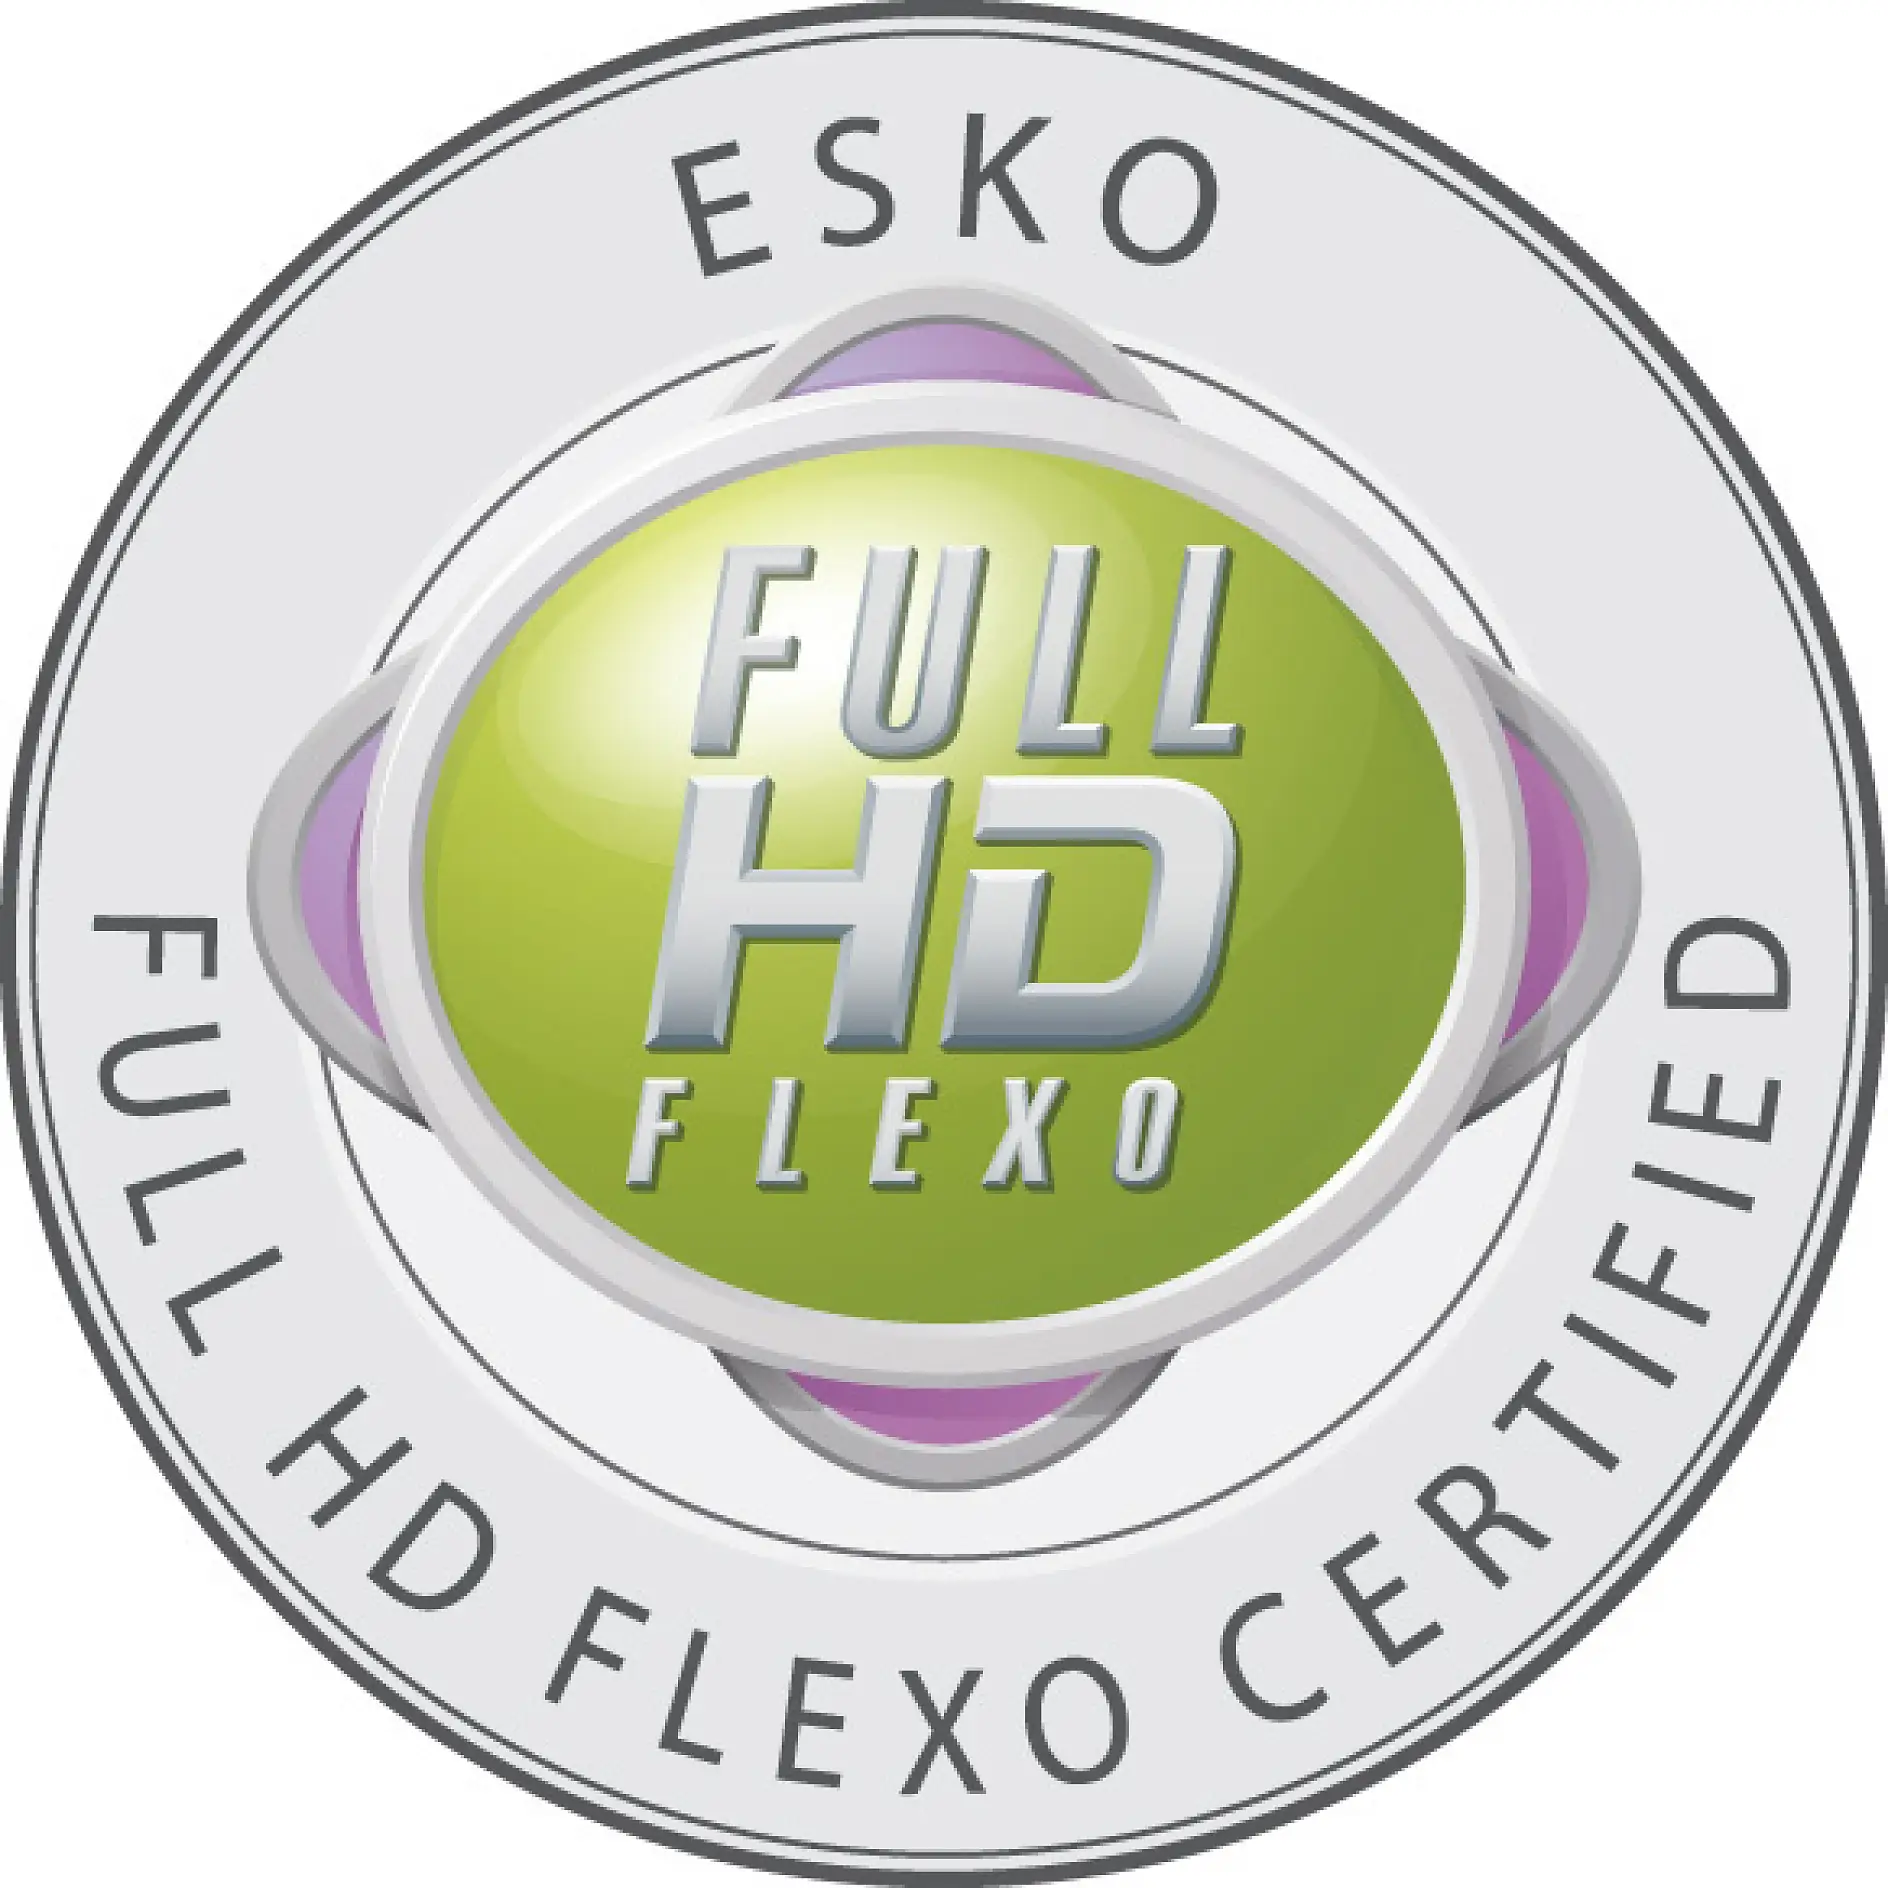 Kun certificerede virksomheder har lov til at bære Fuld HD flexo-skiltet